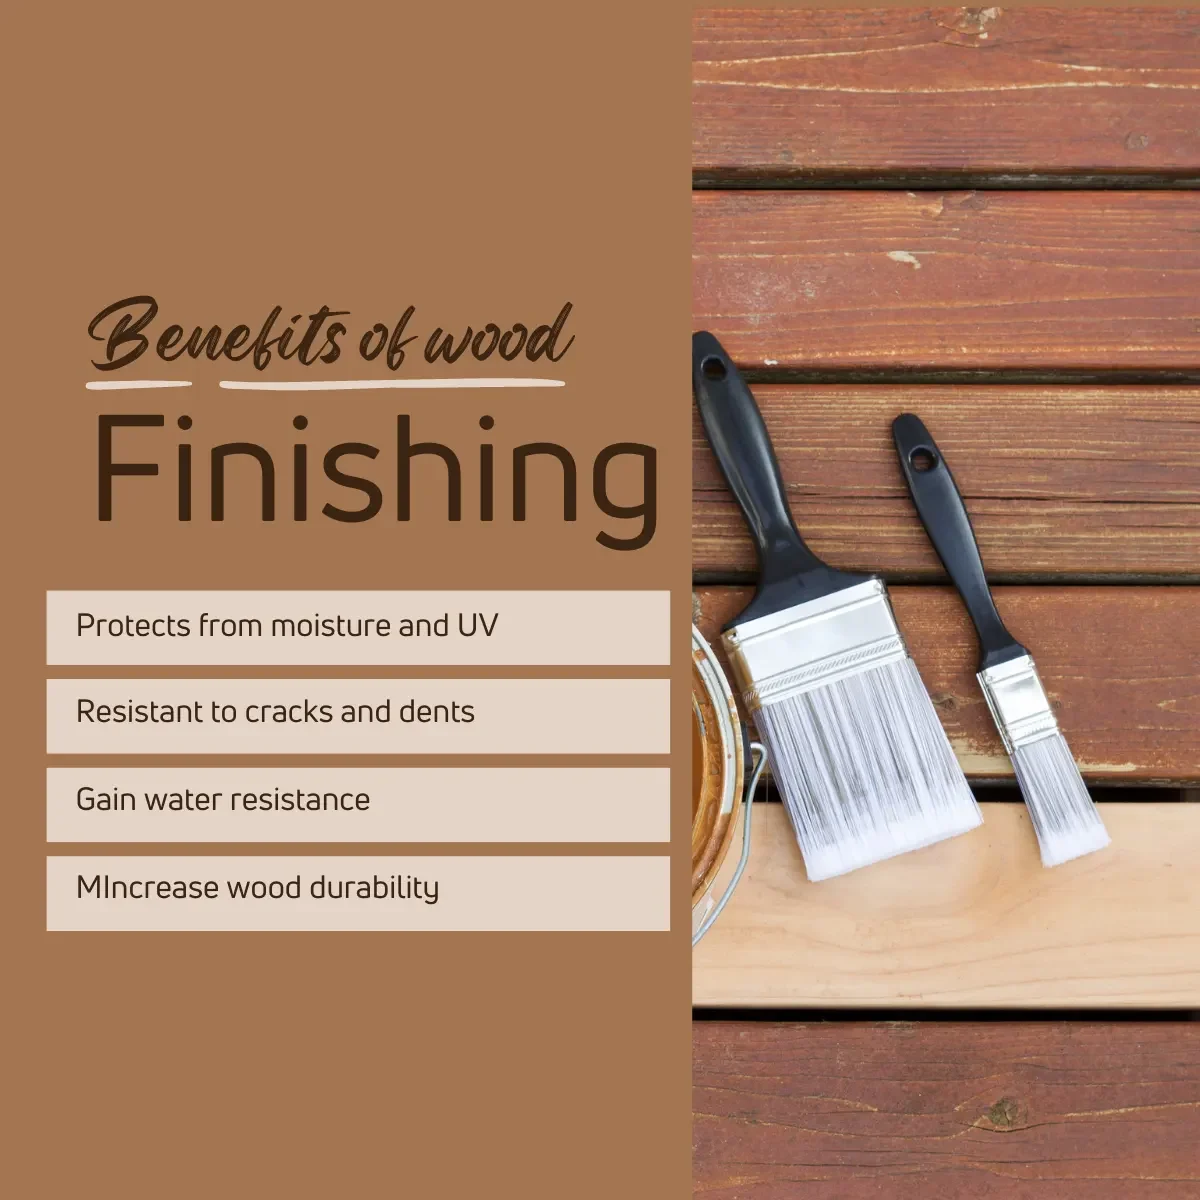 Benefits of wood finishing